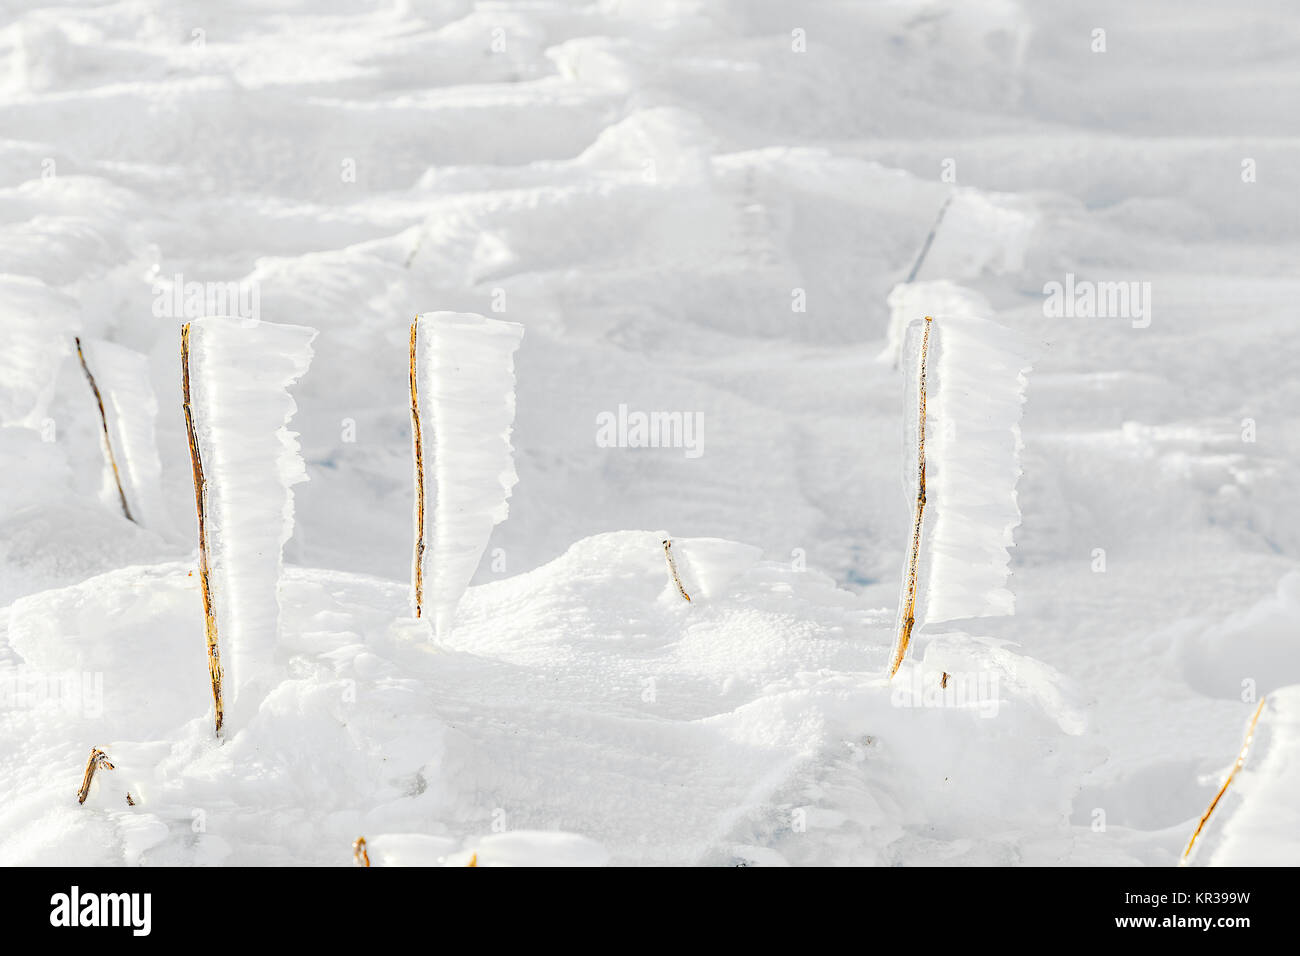 Dettaglio della neve e del ghiaccio a piani congelati in inverno il paesaggio di montagna Foto Stock